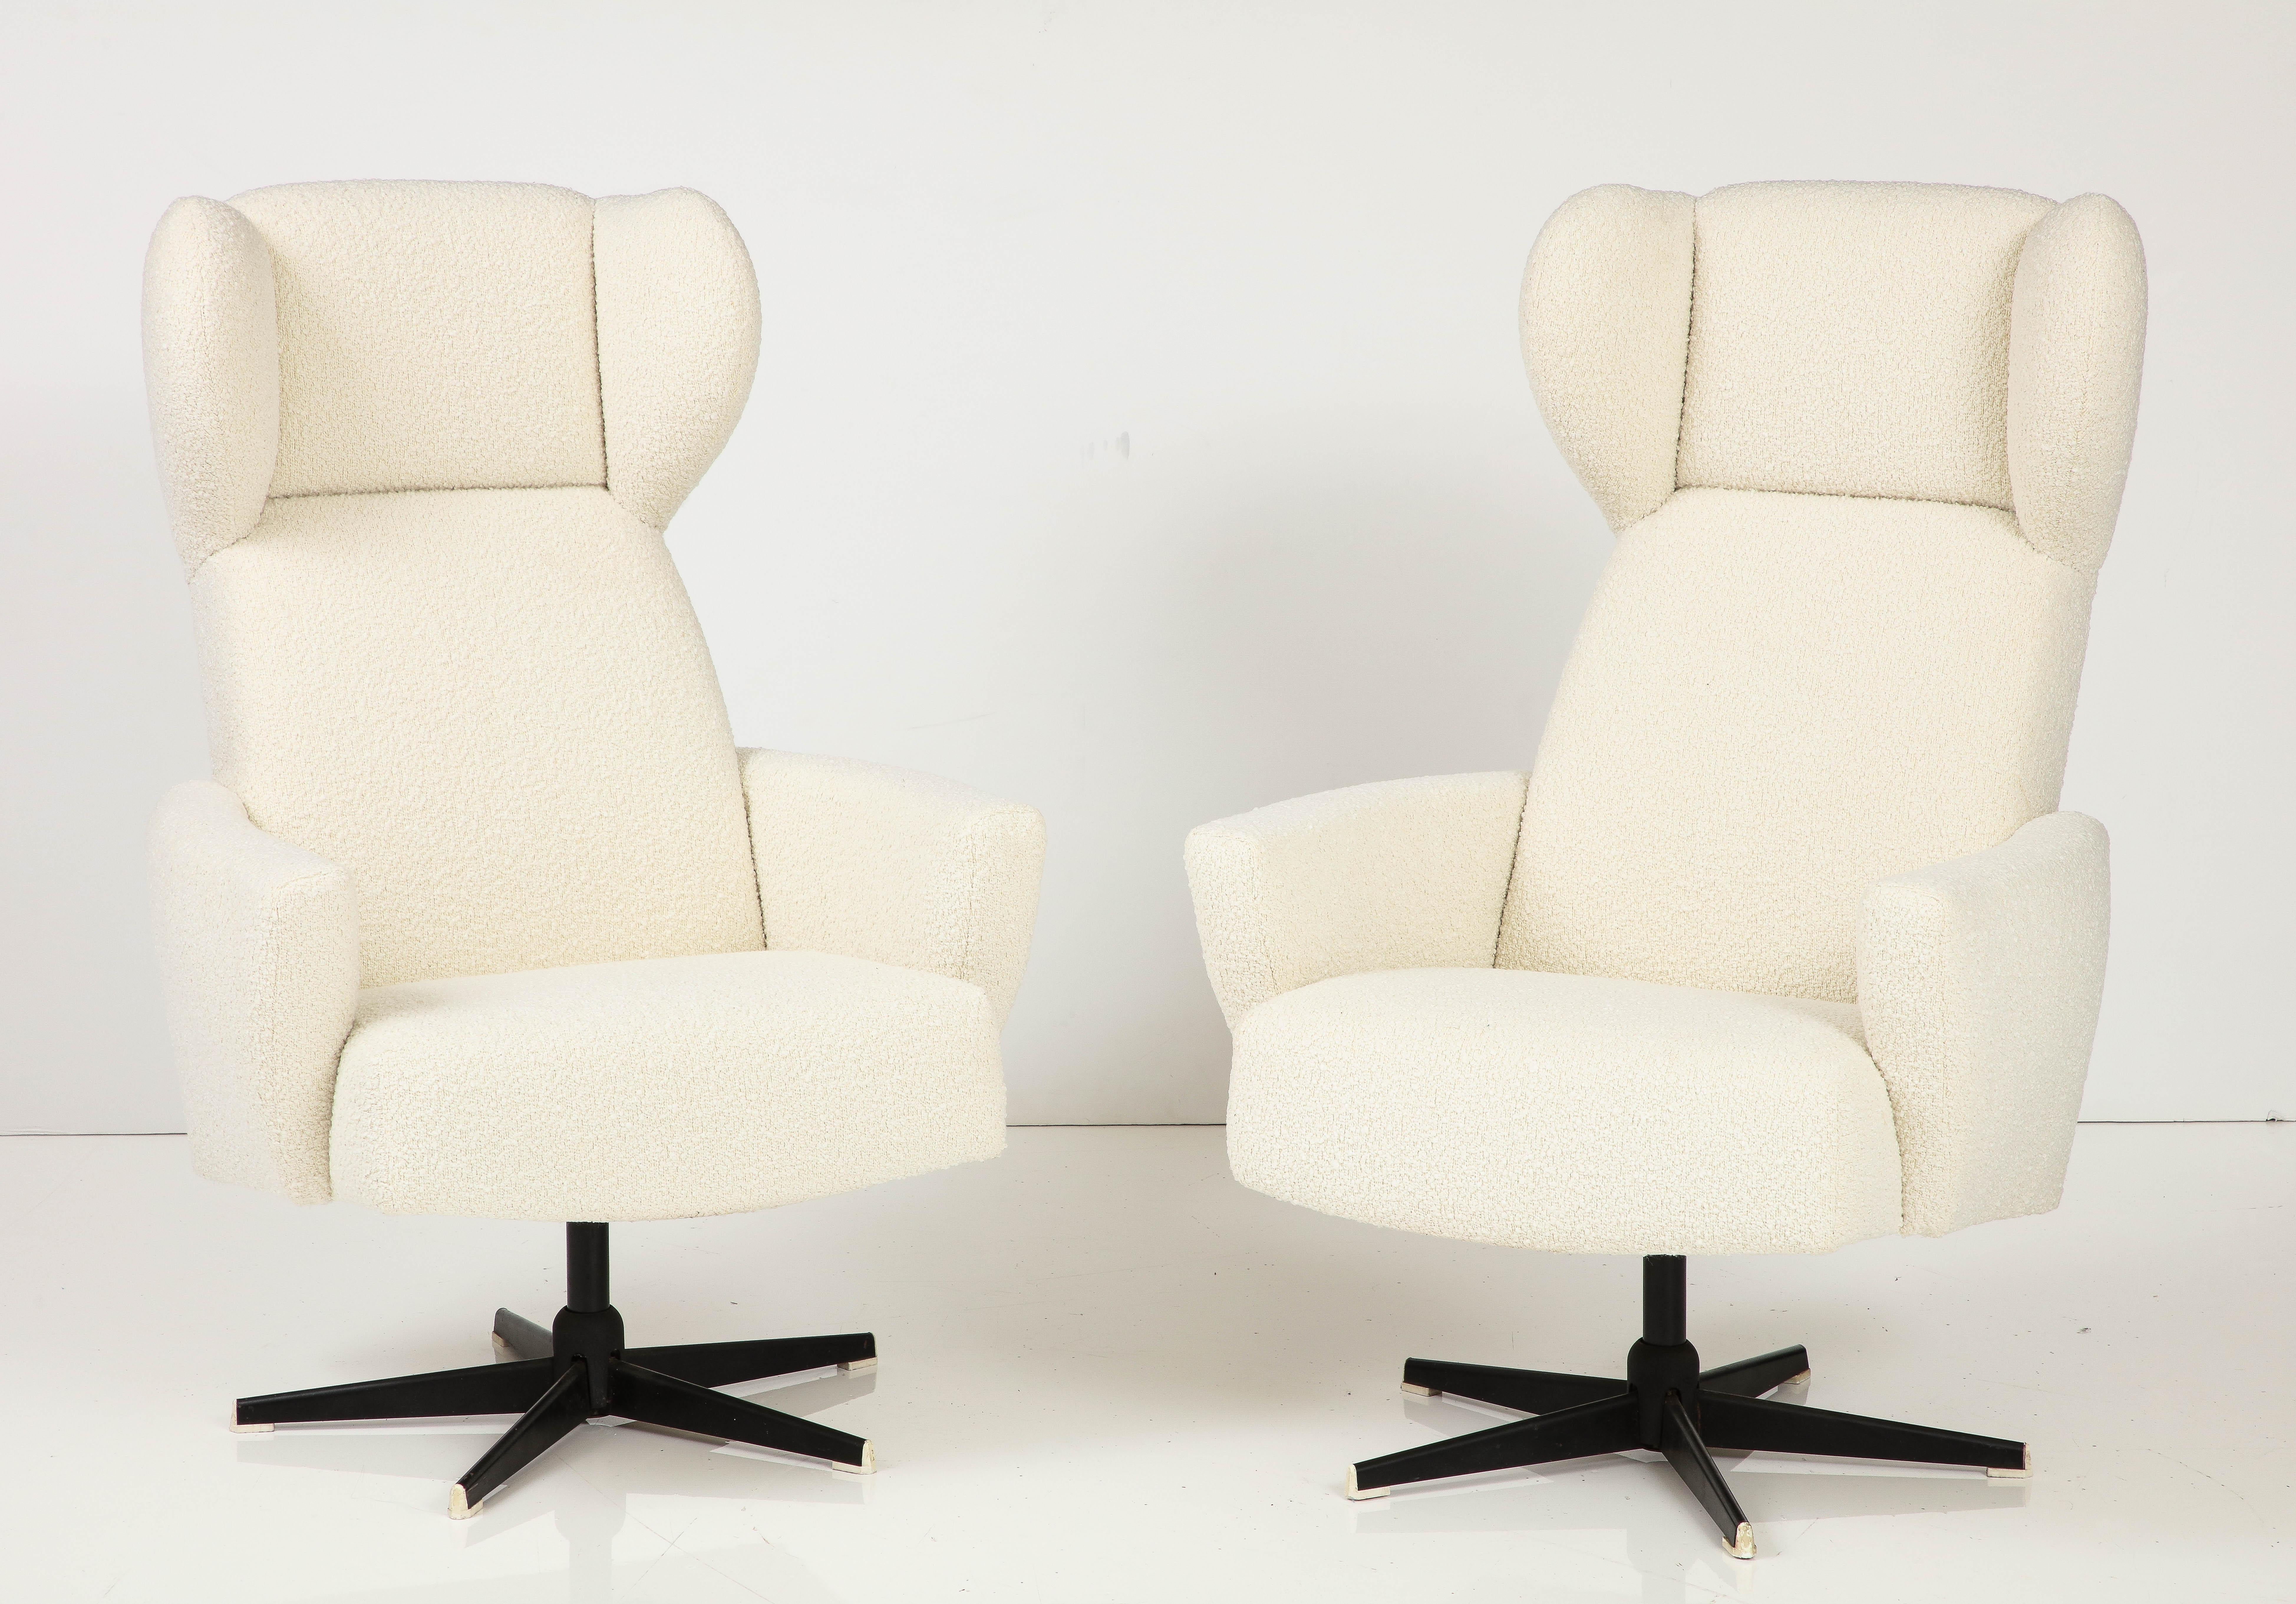 Une paire unique de chaises pivotantes italiennes modernistes à haut dossier, vers 1960.  Très sculpturales et futuristes, elles complèteraient à merveille un salon, un bureau ou une salle multimédia.  Très confortable ; nouvellement rembourré dans